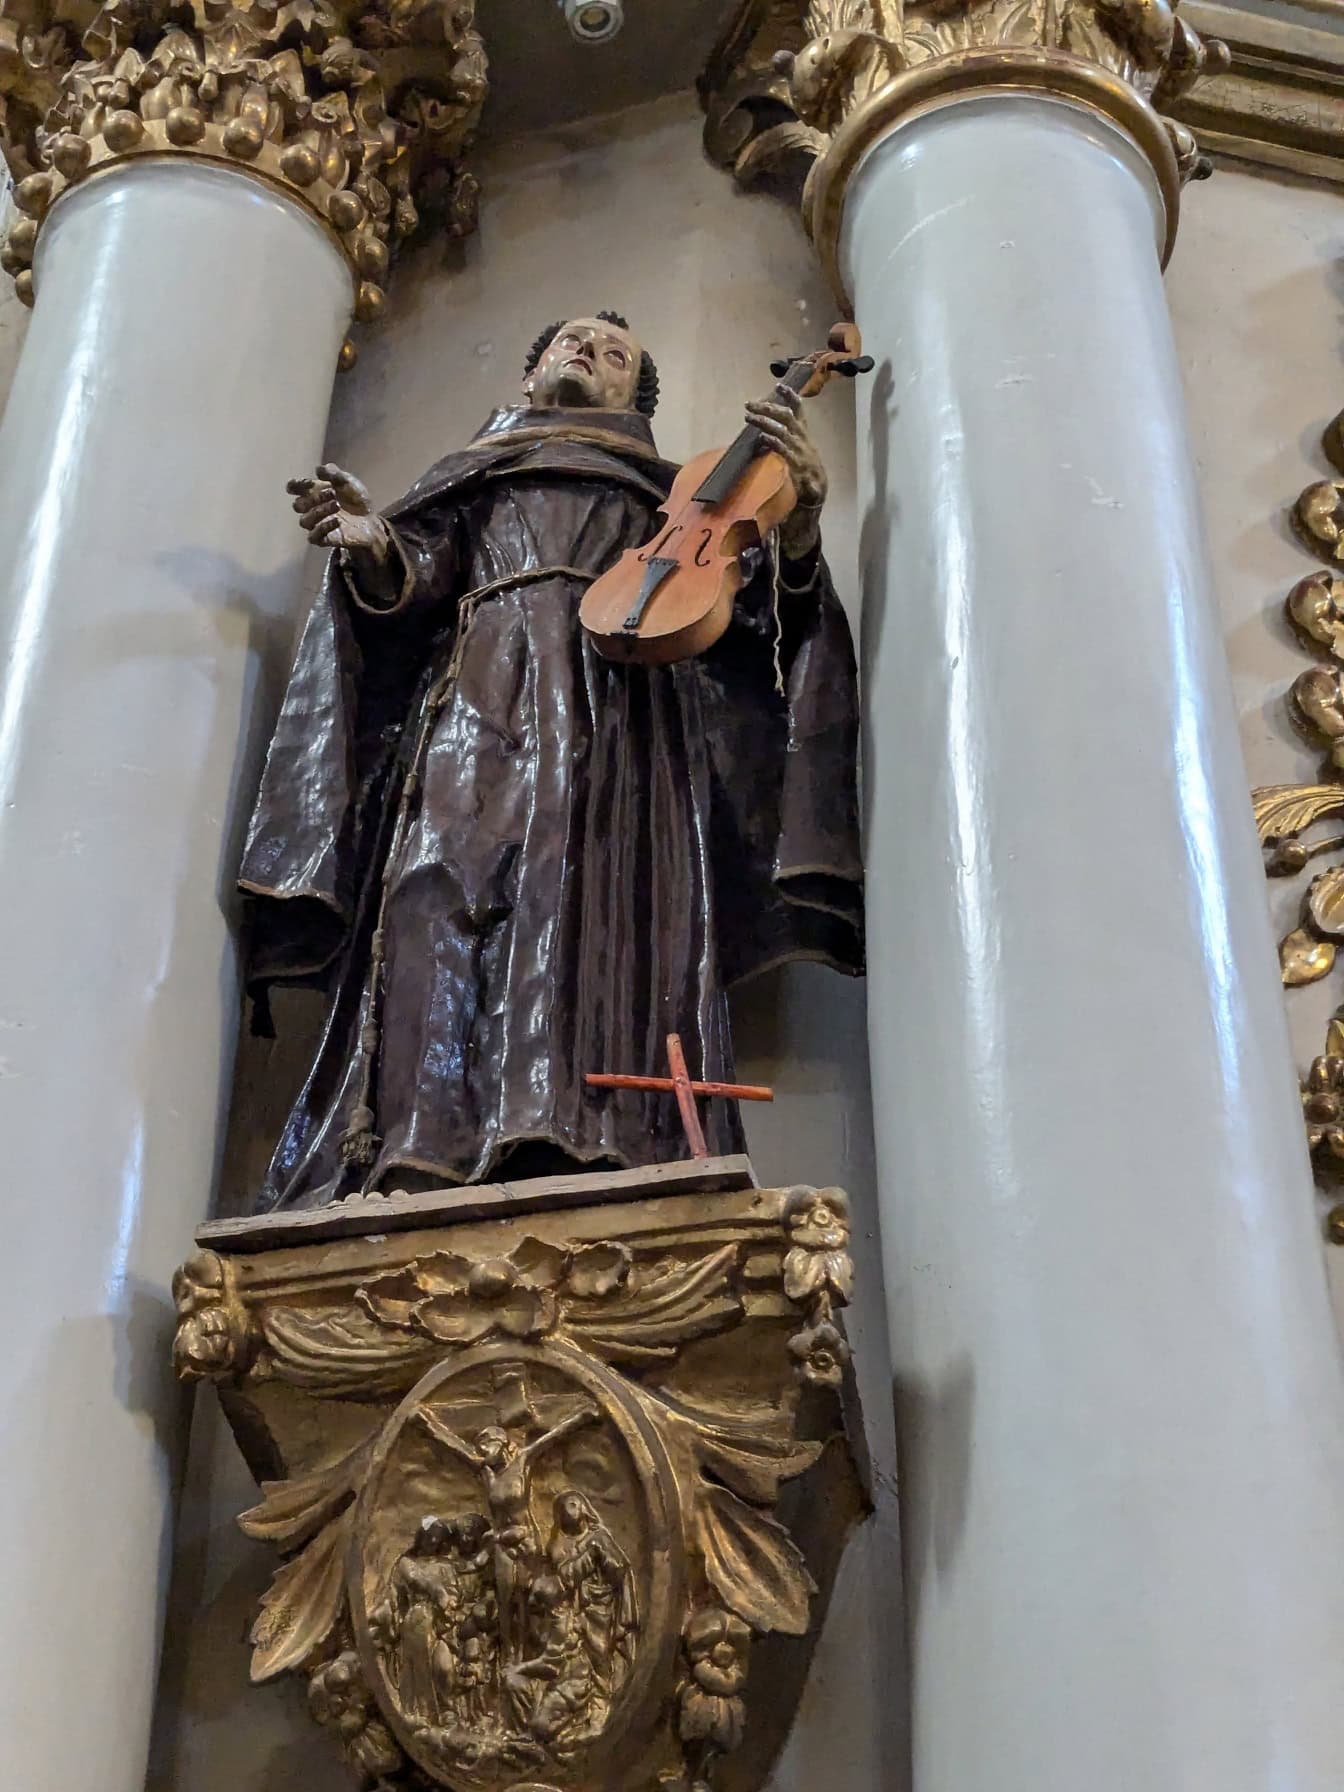 Kip sveca koji drži violinu između stupova u crkvi